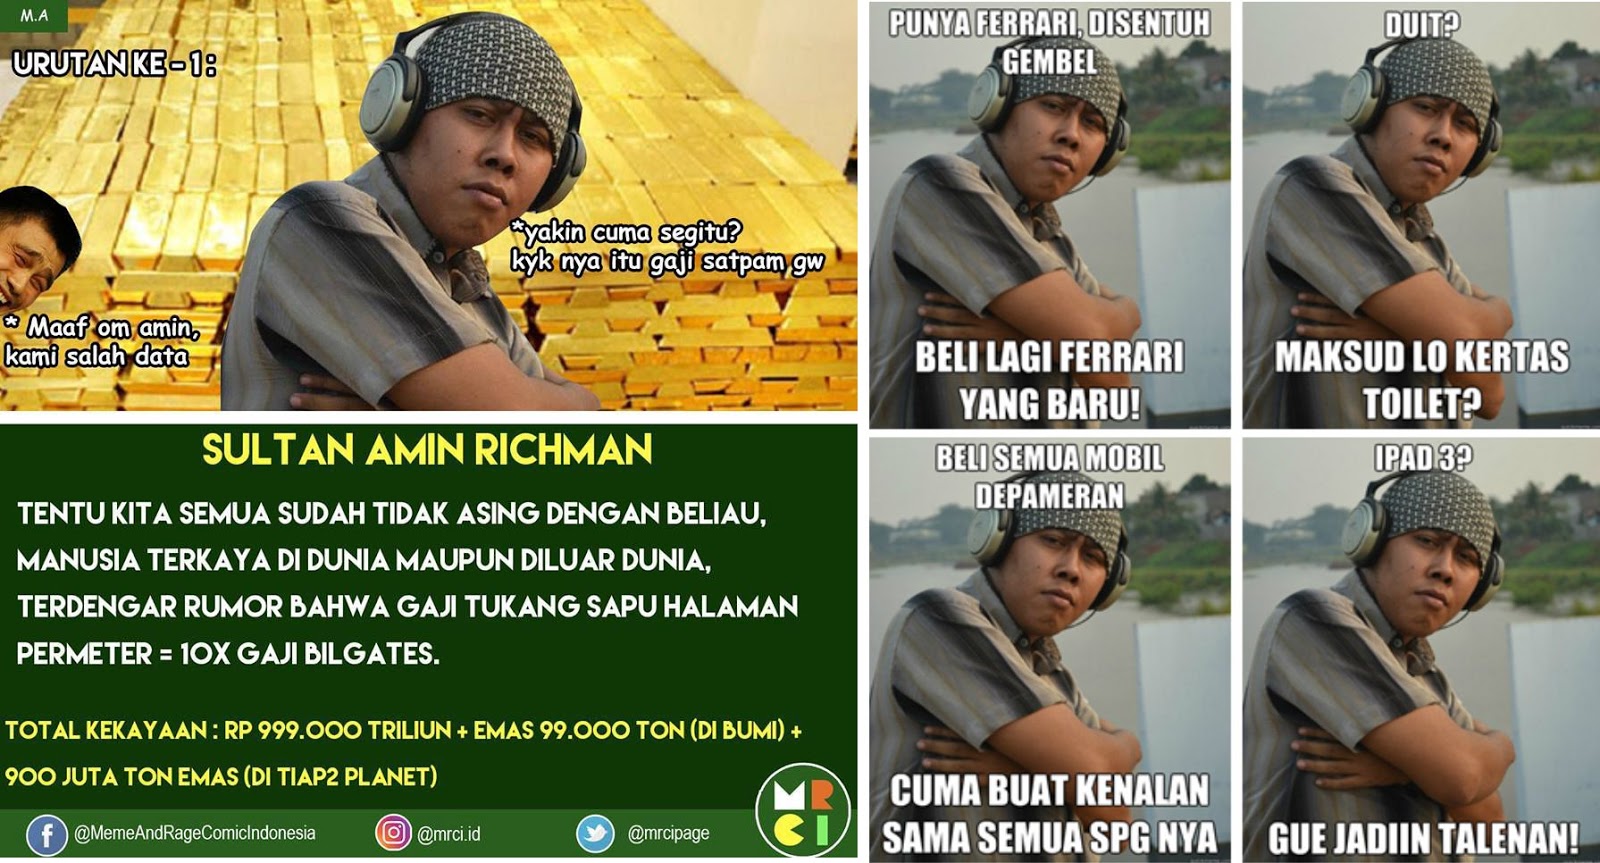 Biodata Asli Sultan Amin Richman Tokoh Meme Horang Kayah